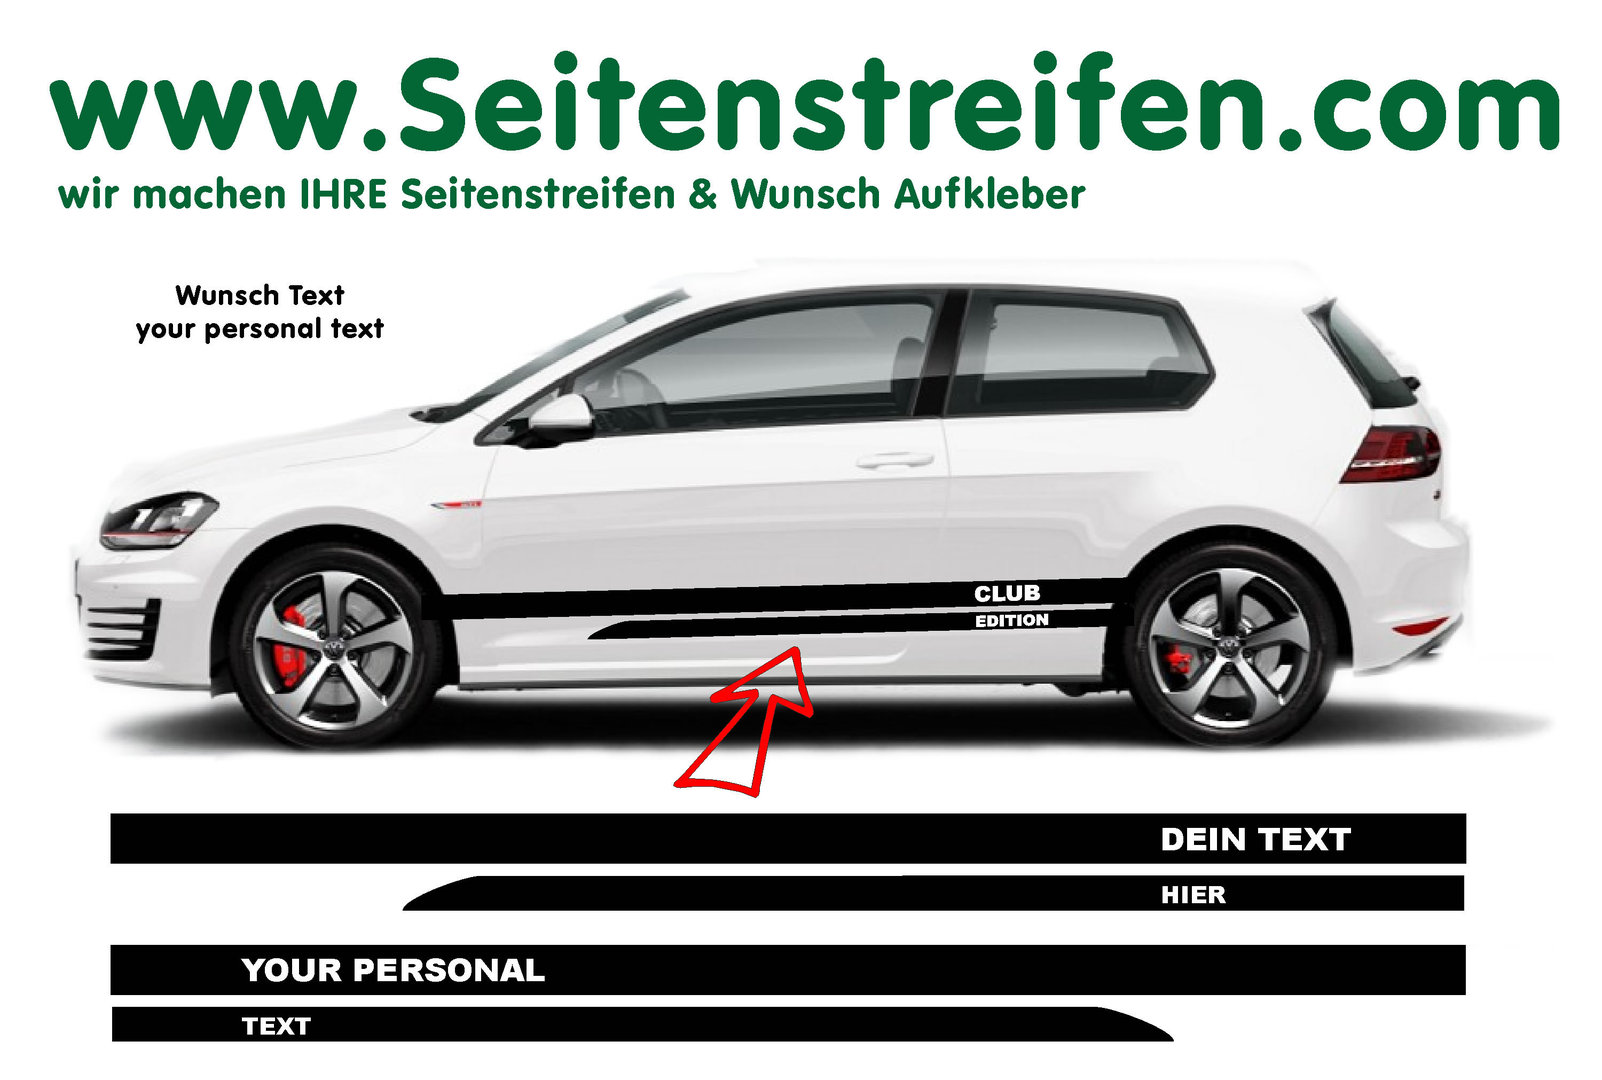 VW Golf Wunsch Text Version 5 Seitenstreifen Aufkleber Set für 3+4 Türer - Art. Nr.: 8519